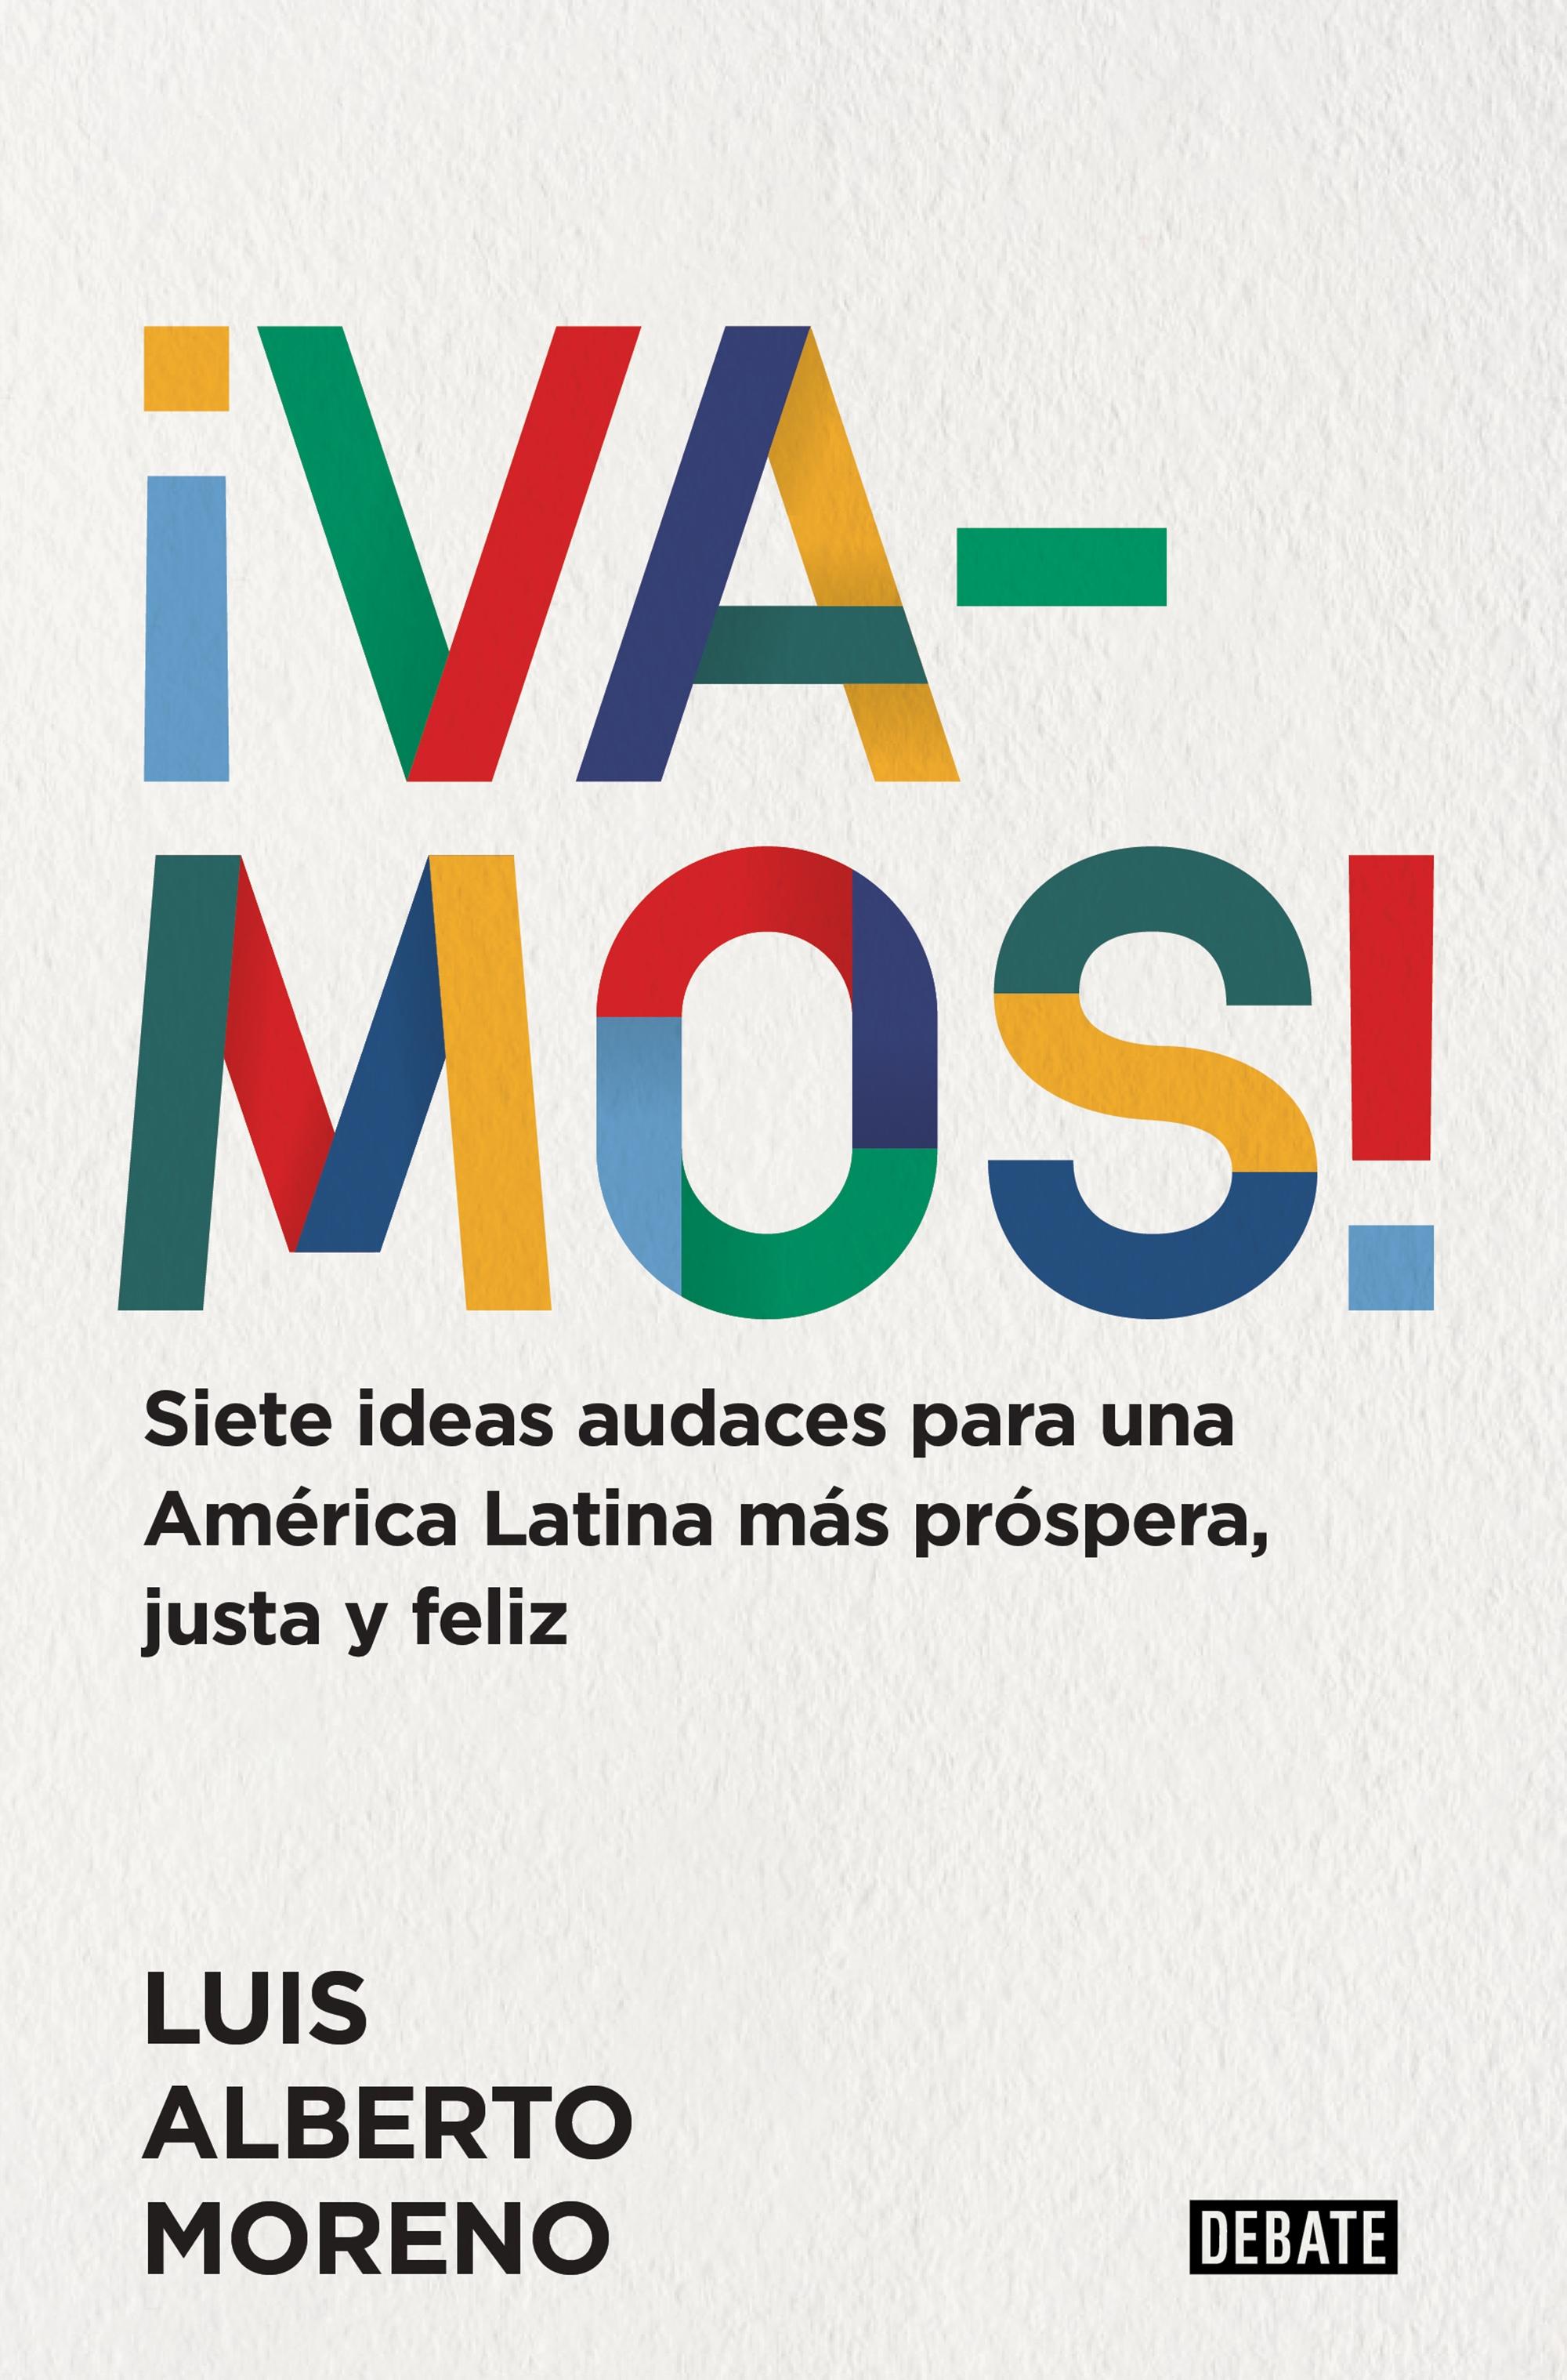 ¡VAMOS! "Siete ideas audaces para una América Latina más próspera, justa y feliz"